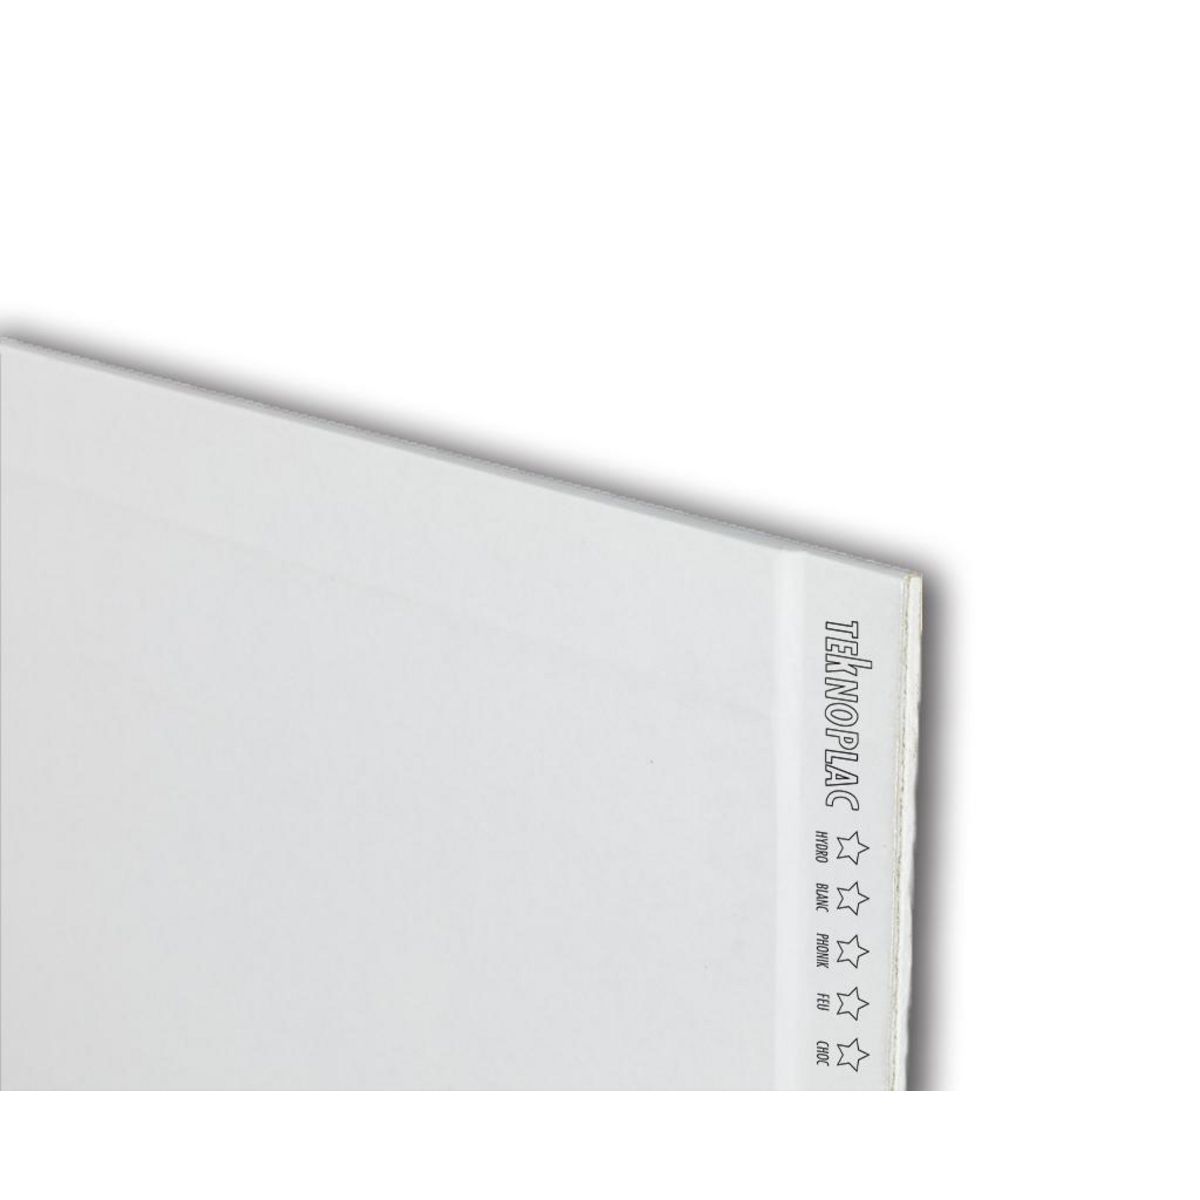 CENTRALE BRICO Plaque de plâtre BA 13, 4 en 1, H.250 x l.120 cm, hydro, feu, HD, phonique KNAUF